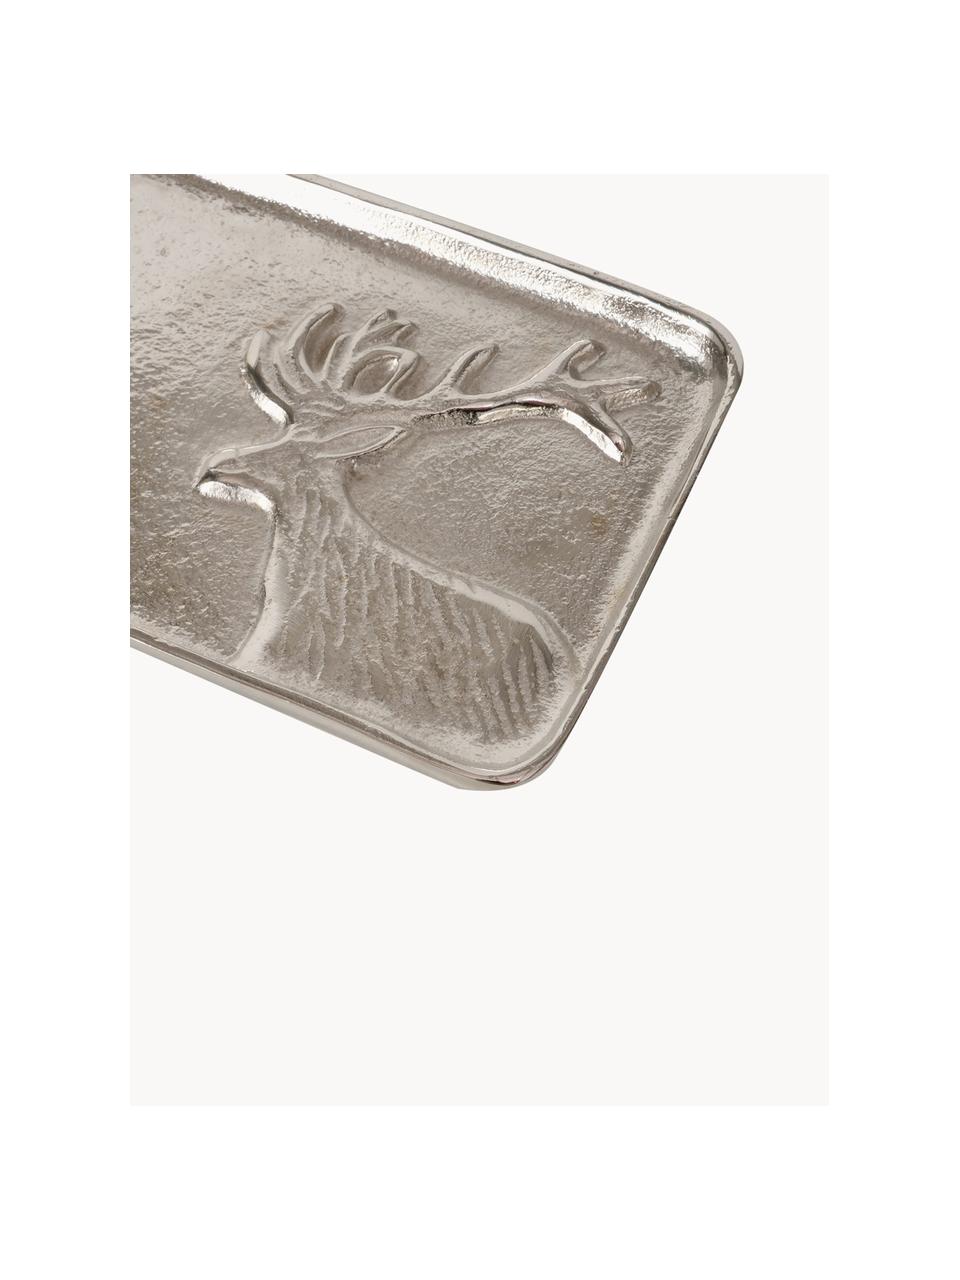 Deko-Tablett Egon, Metall, beschichtet, Silberfarben, L 37 x B 13 cm